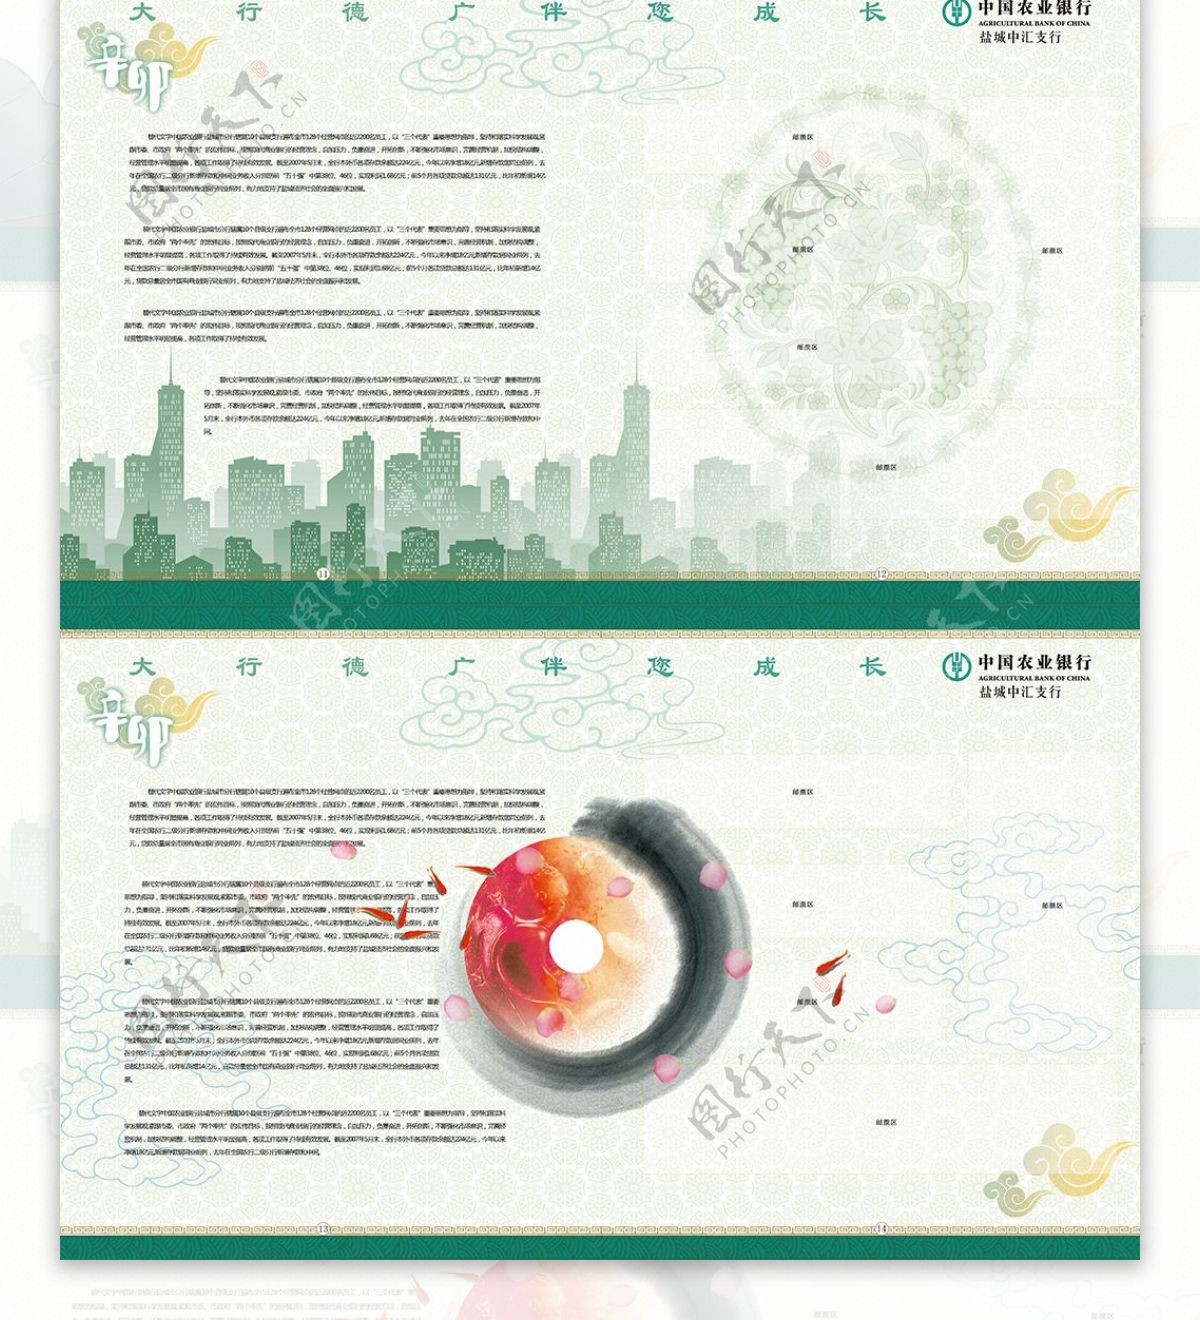 中国农业银行画册宣传册